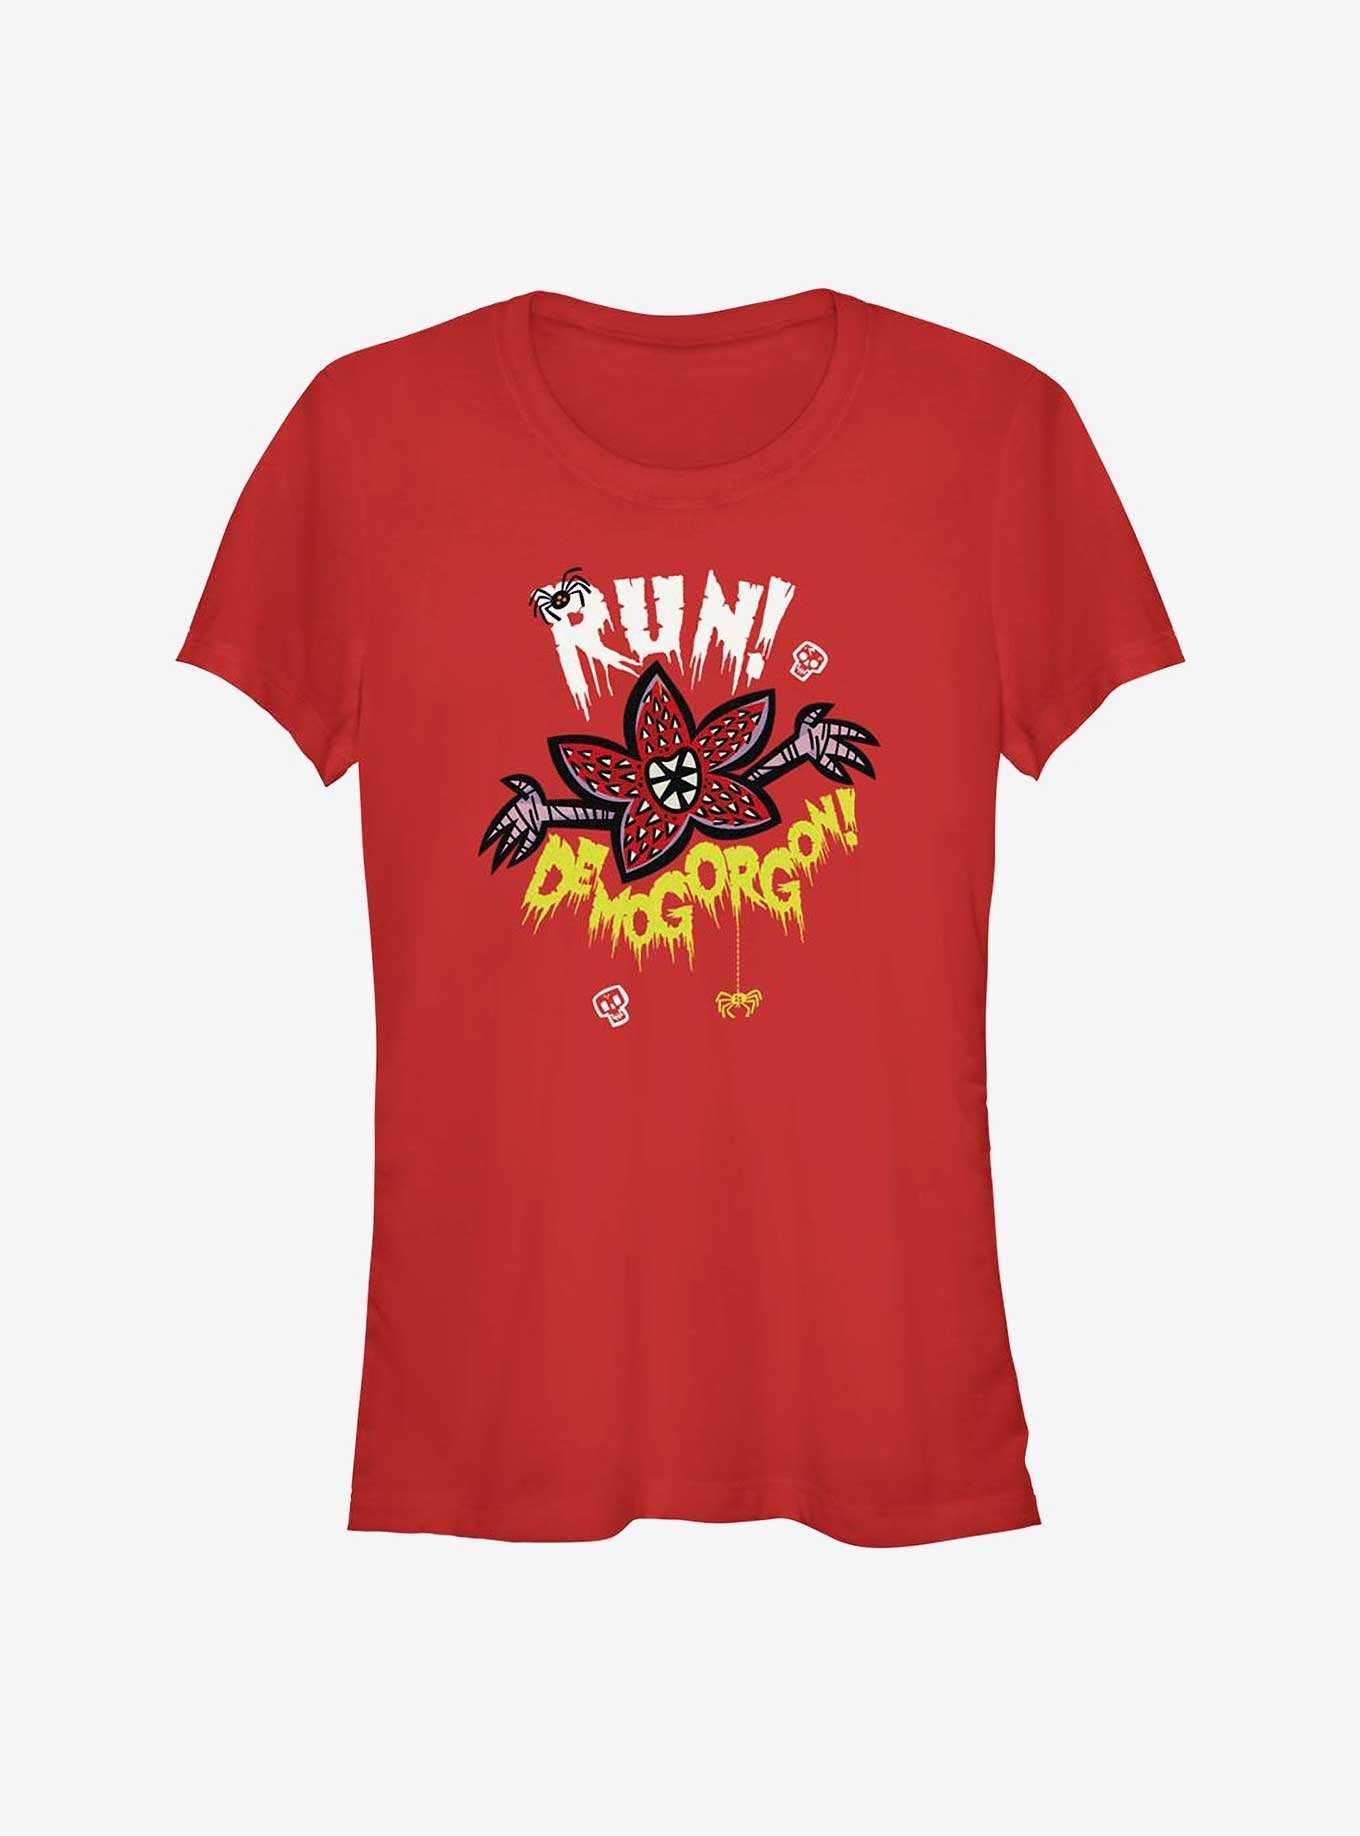 Stranger Things Run Away! Demogorgon! Girls T-Shirt, , hi-res